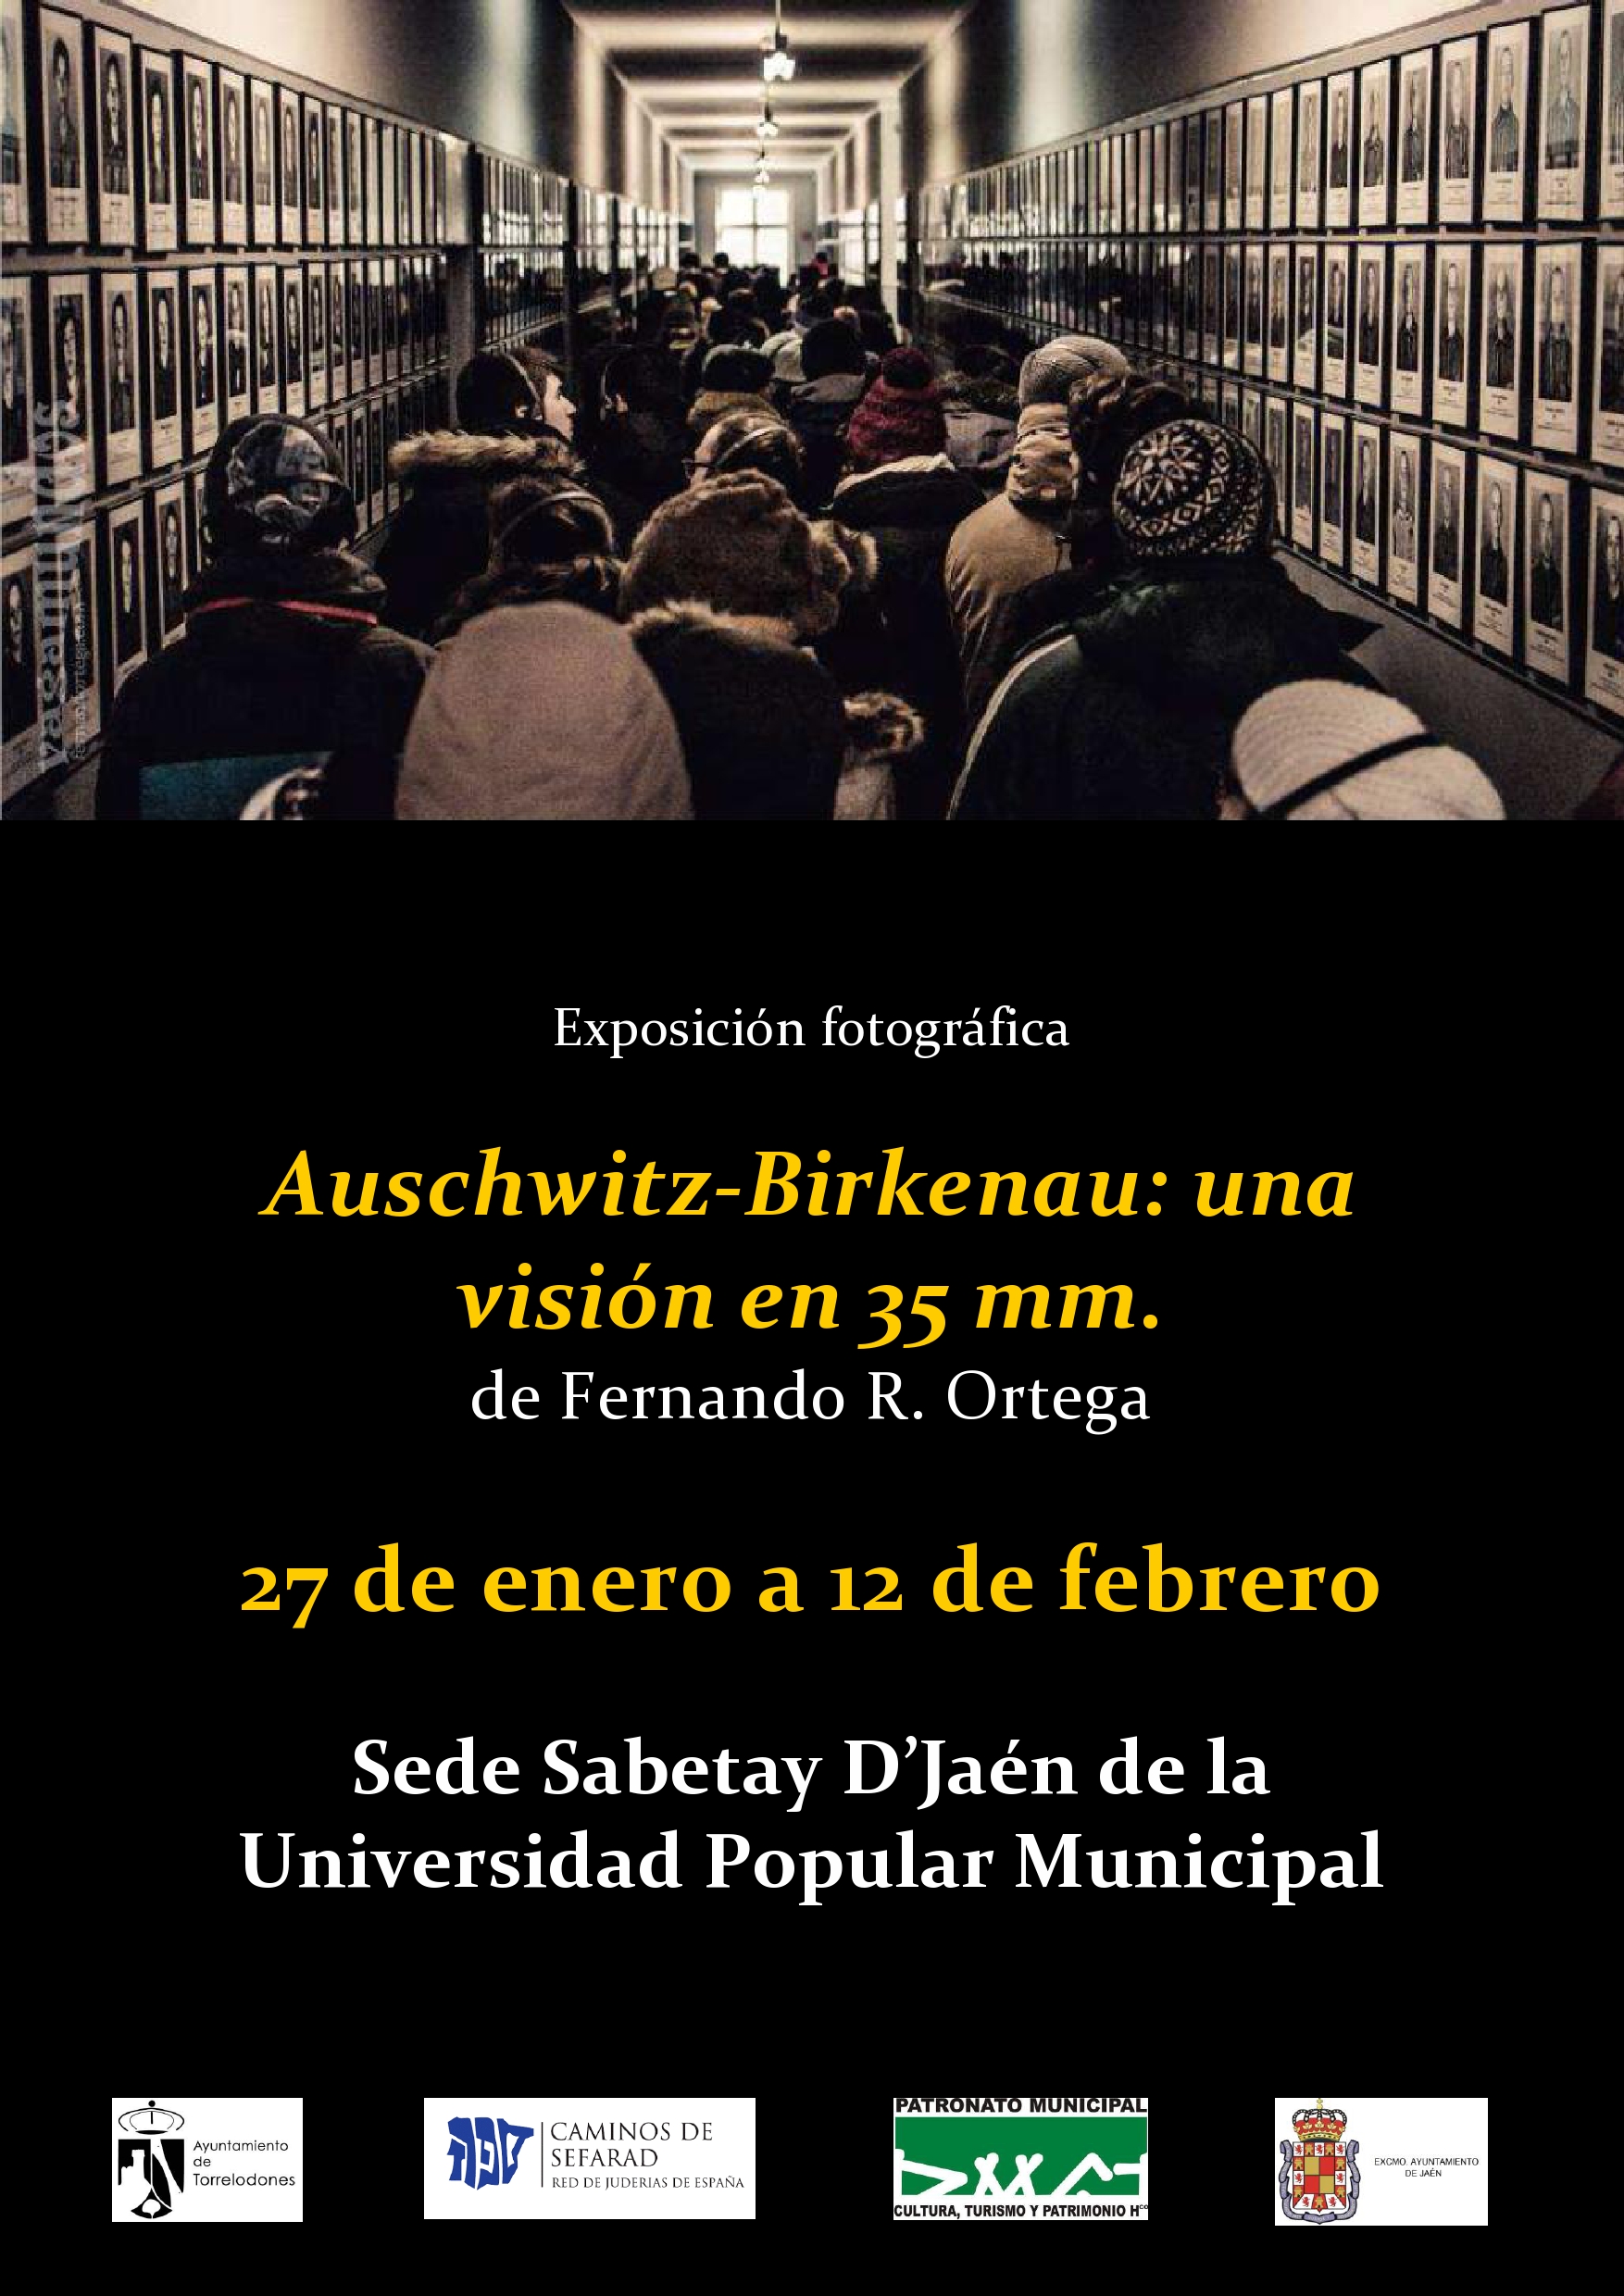 Expo fotogafía Auschwitz-Birkenau: una visión en 35 mm | Fernando R. Ortega